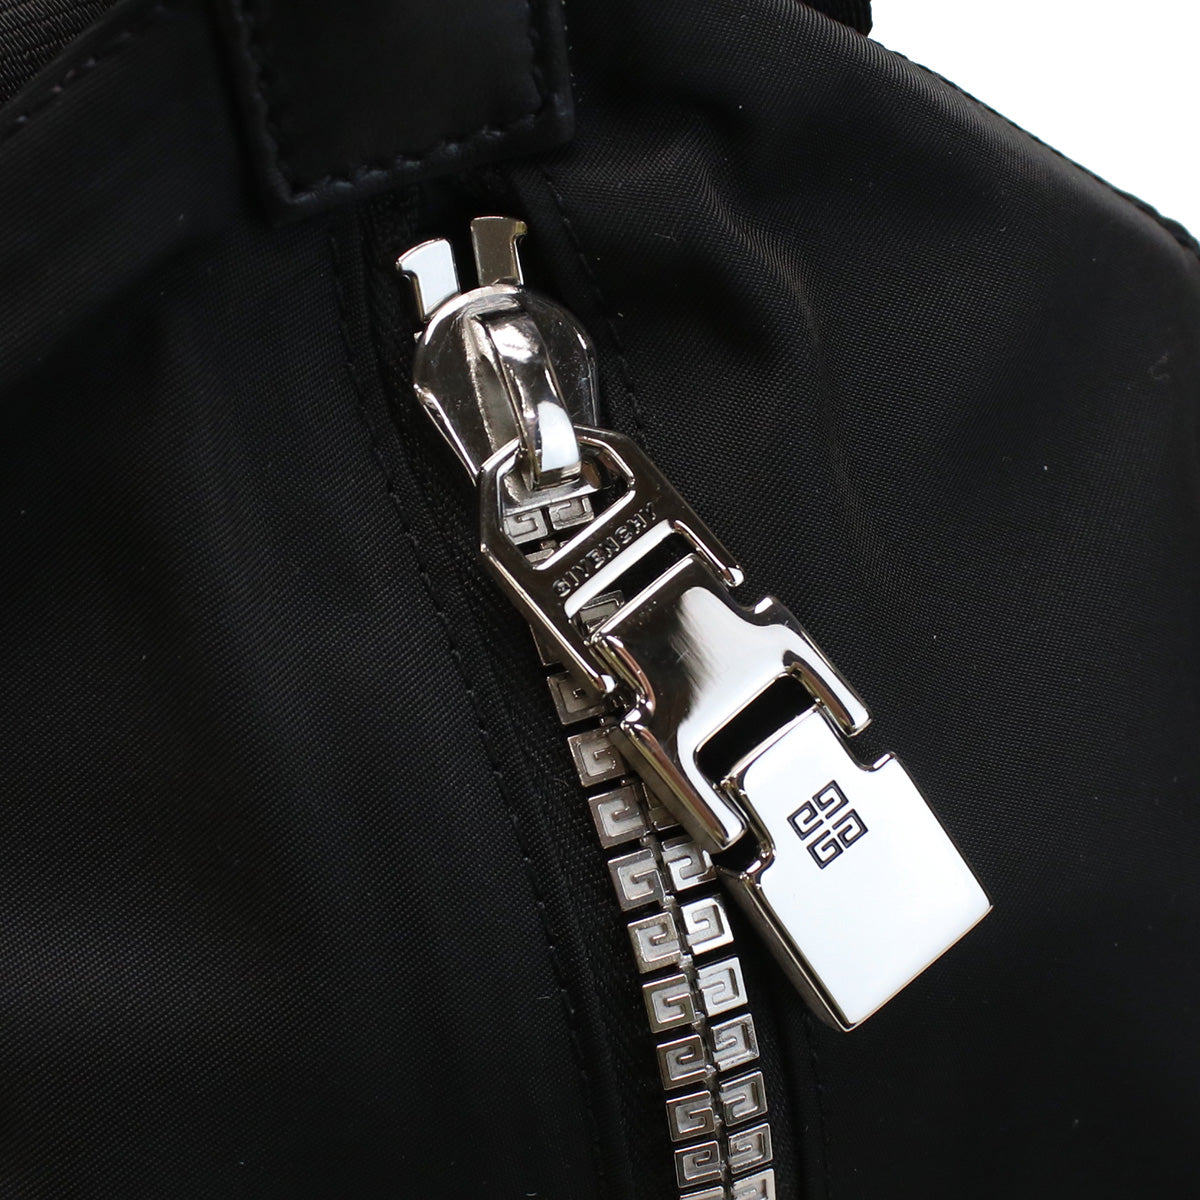 Givenchy ジバンシー BK50A8 リュック ブラック メンズ